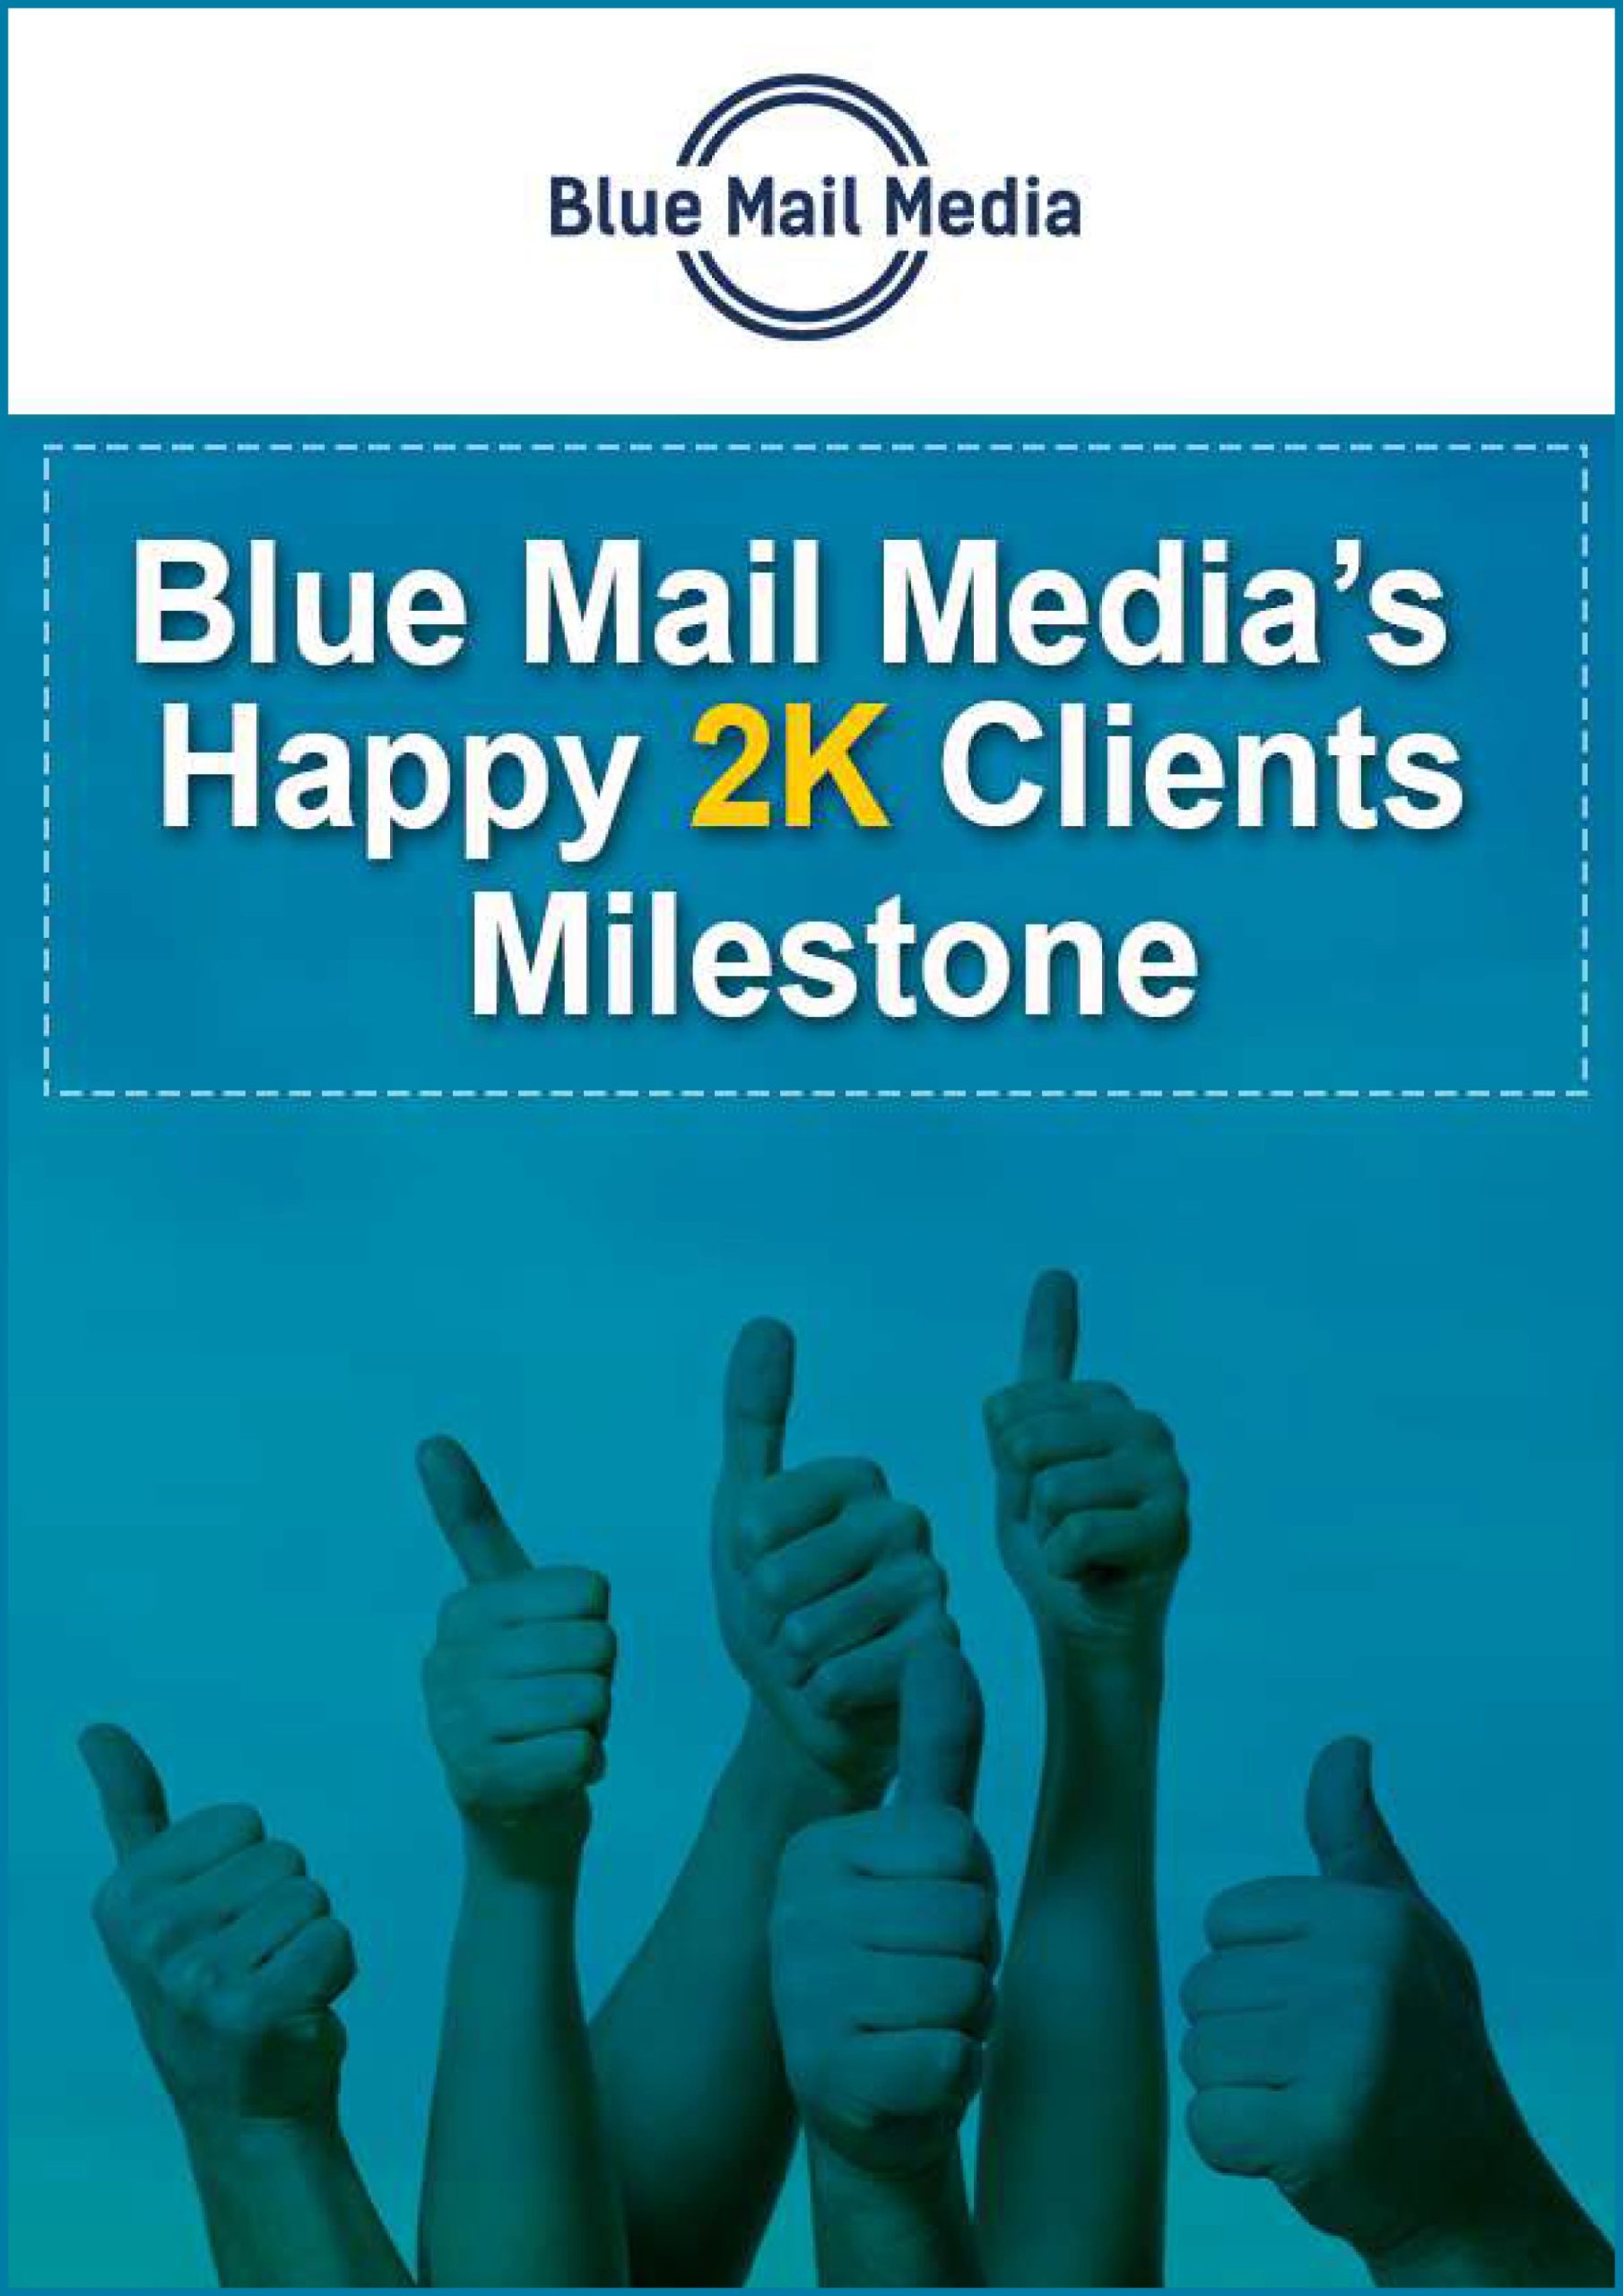 Happy 2k clients milestone